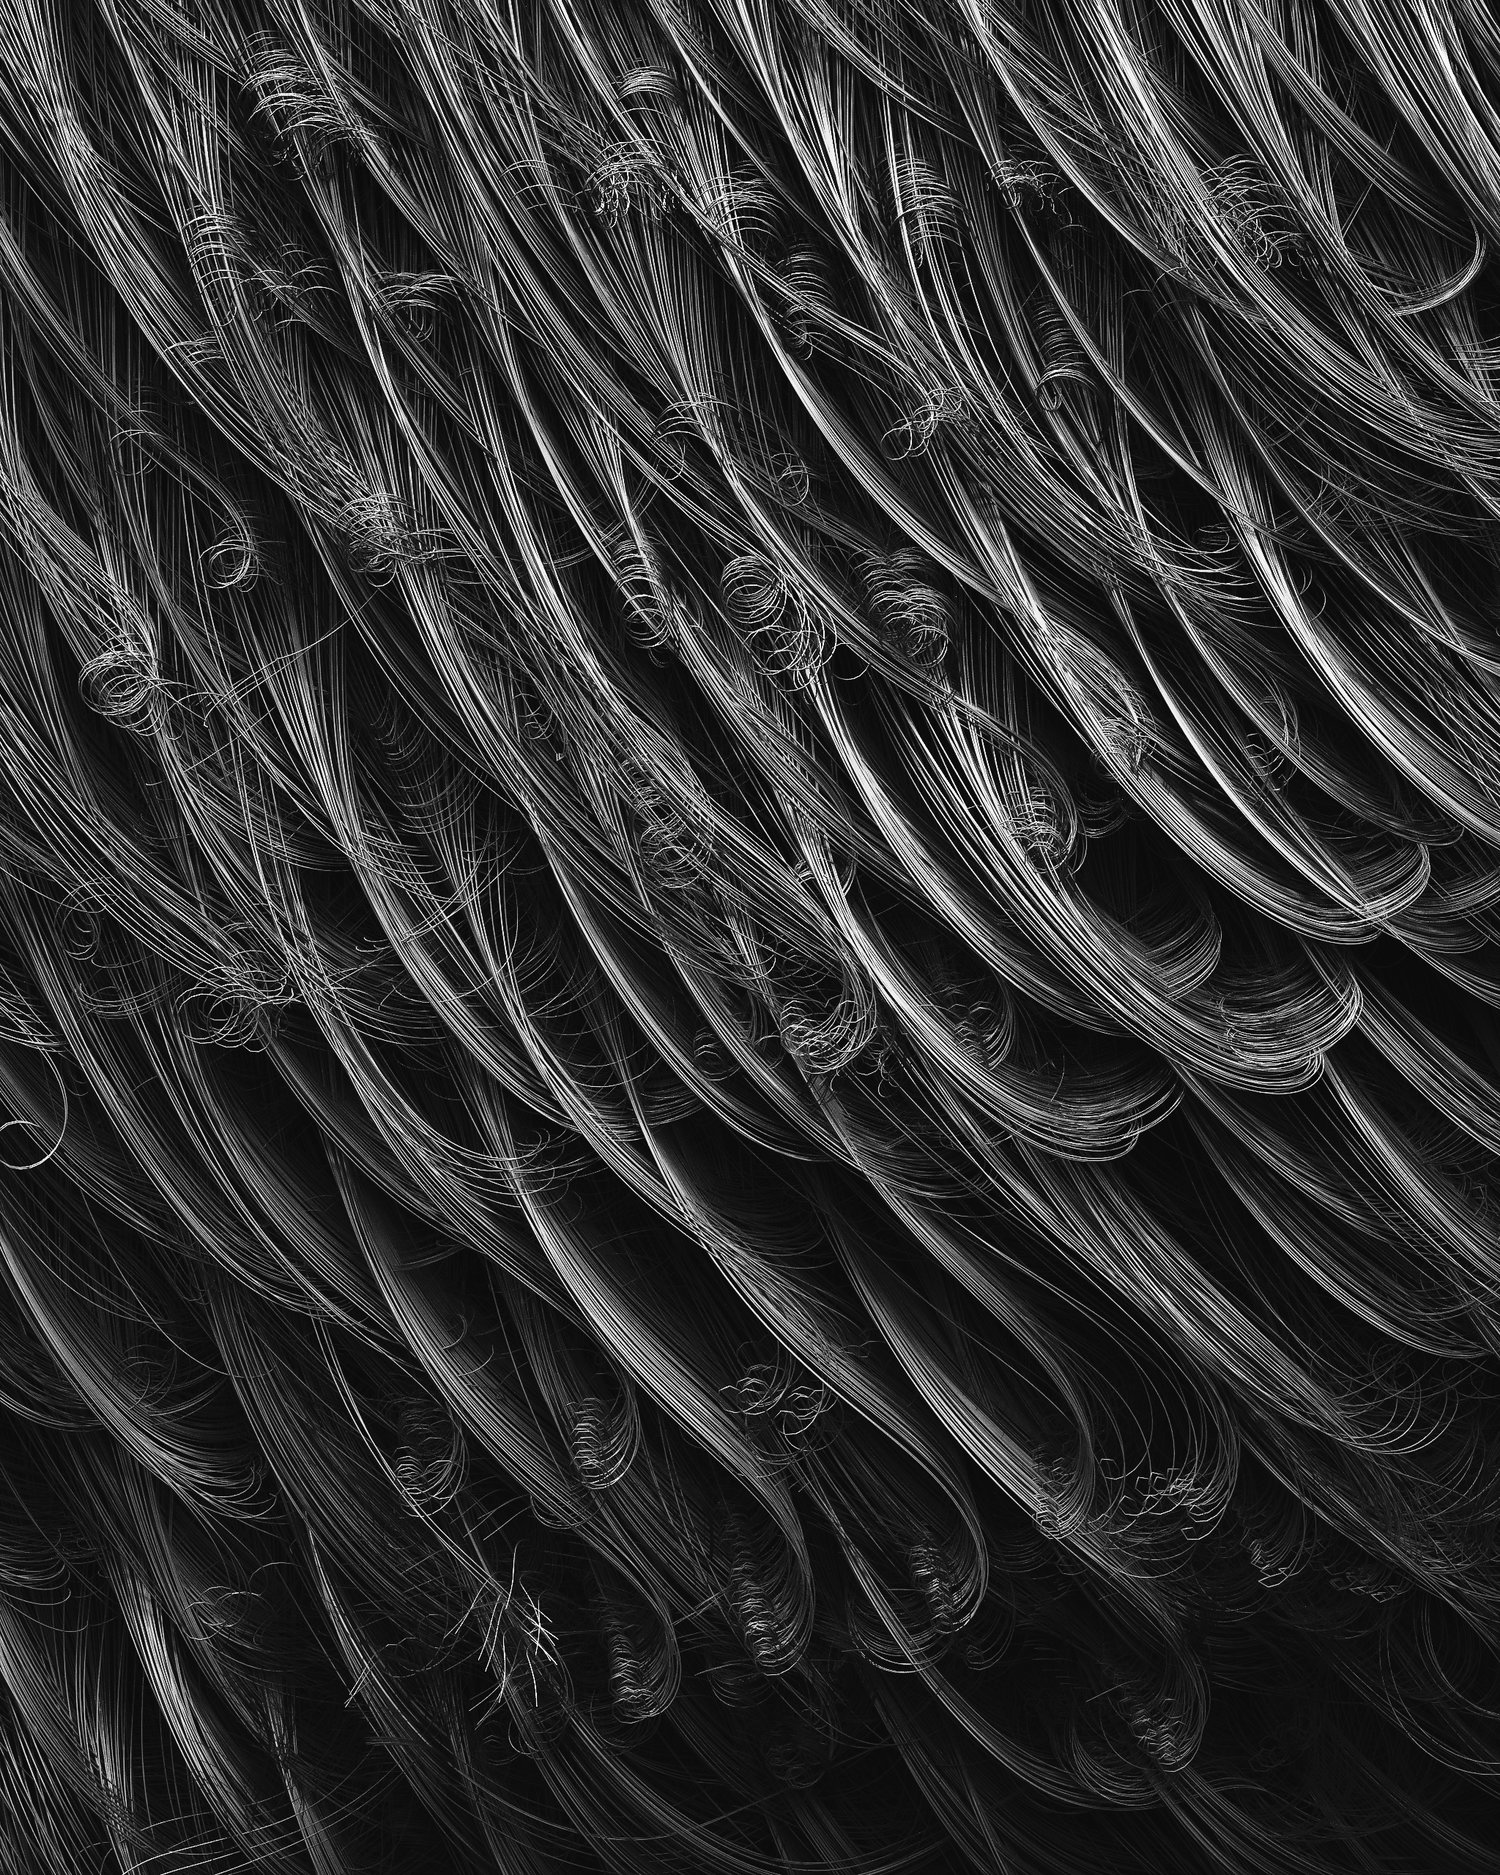 黑白线条立体毛发蜷曲集群[05-08-17]-Wired.jpg